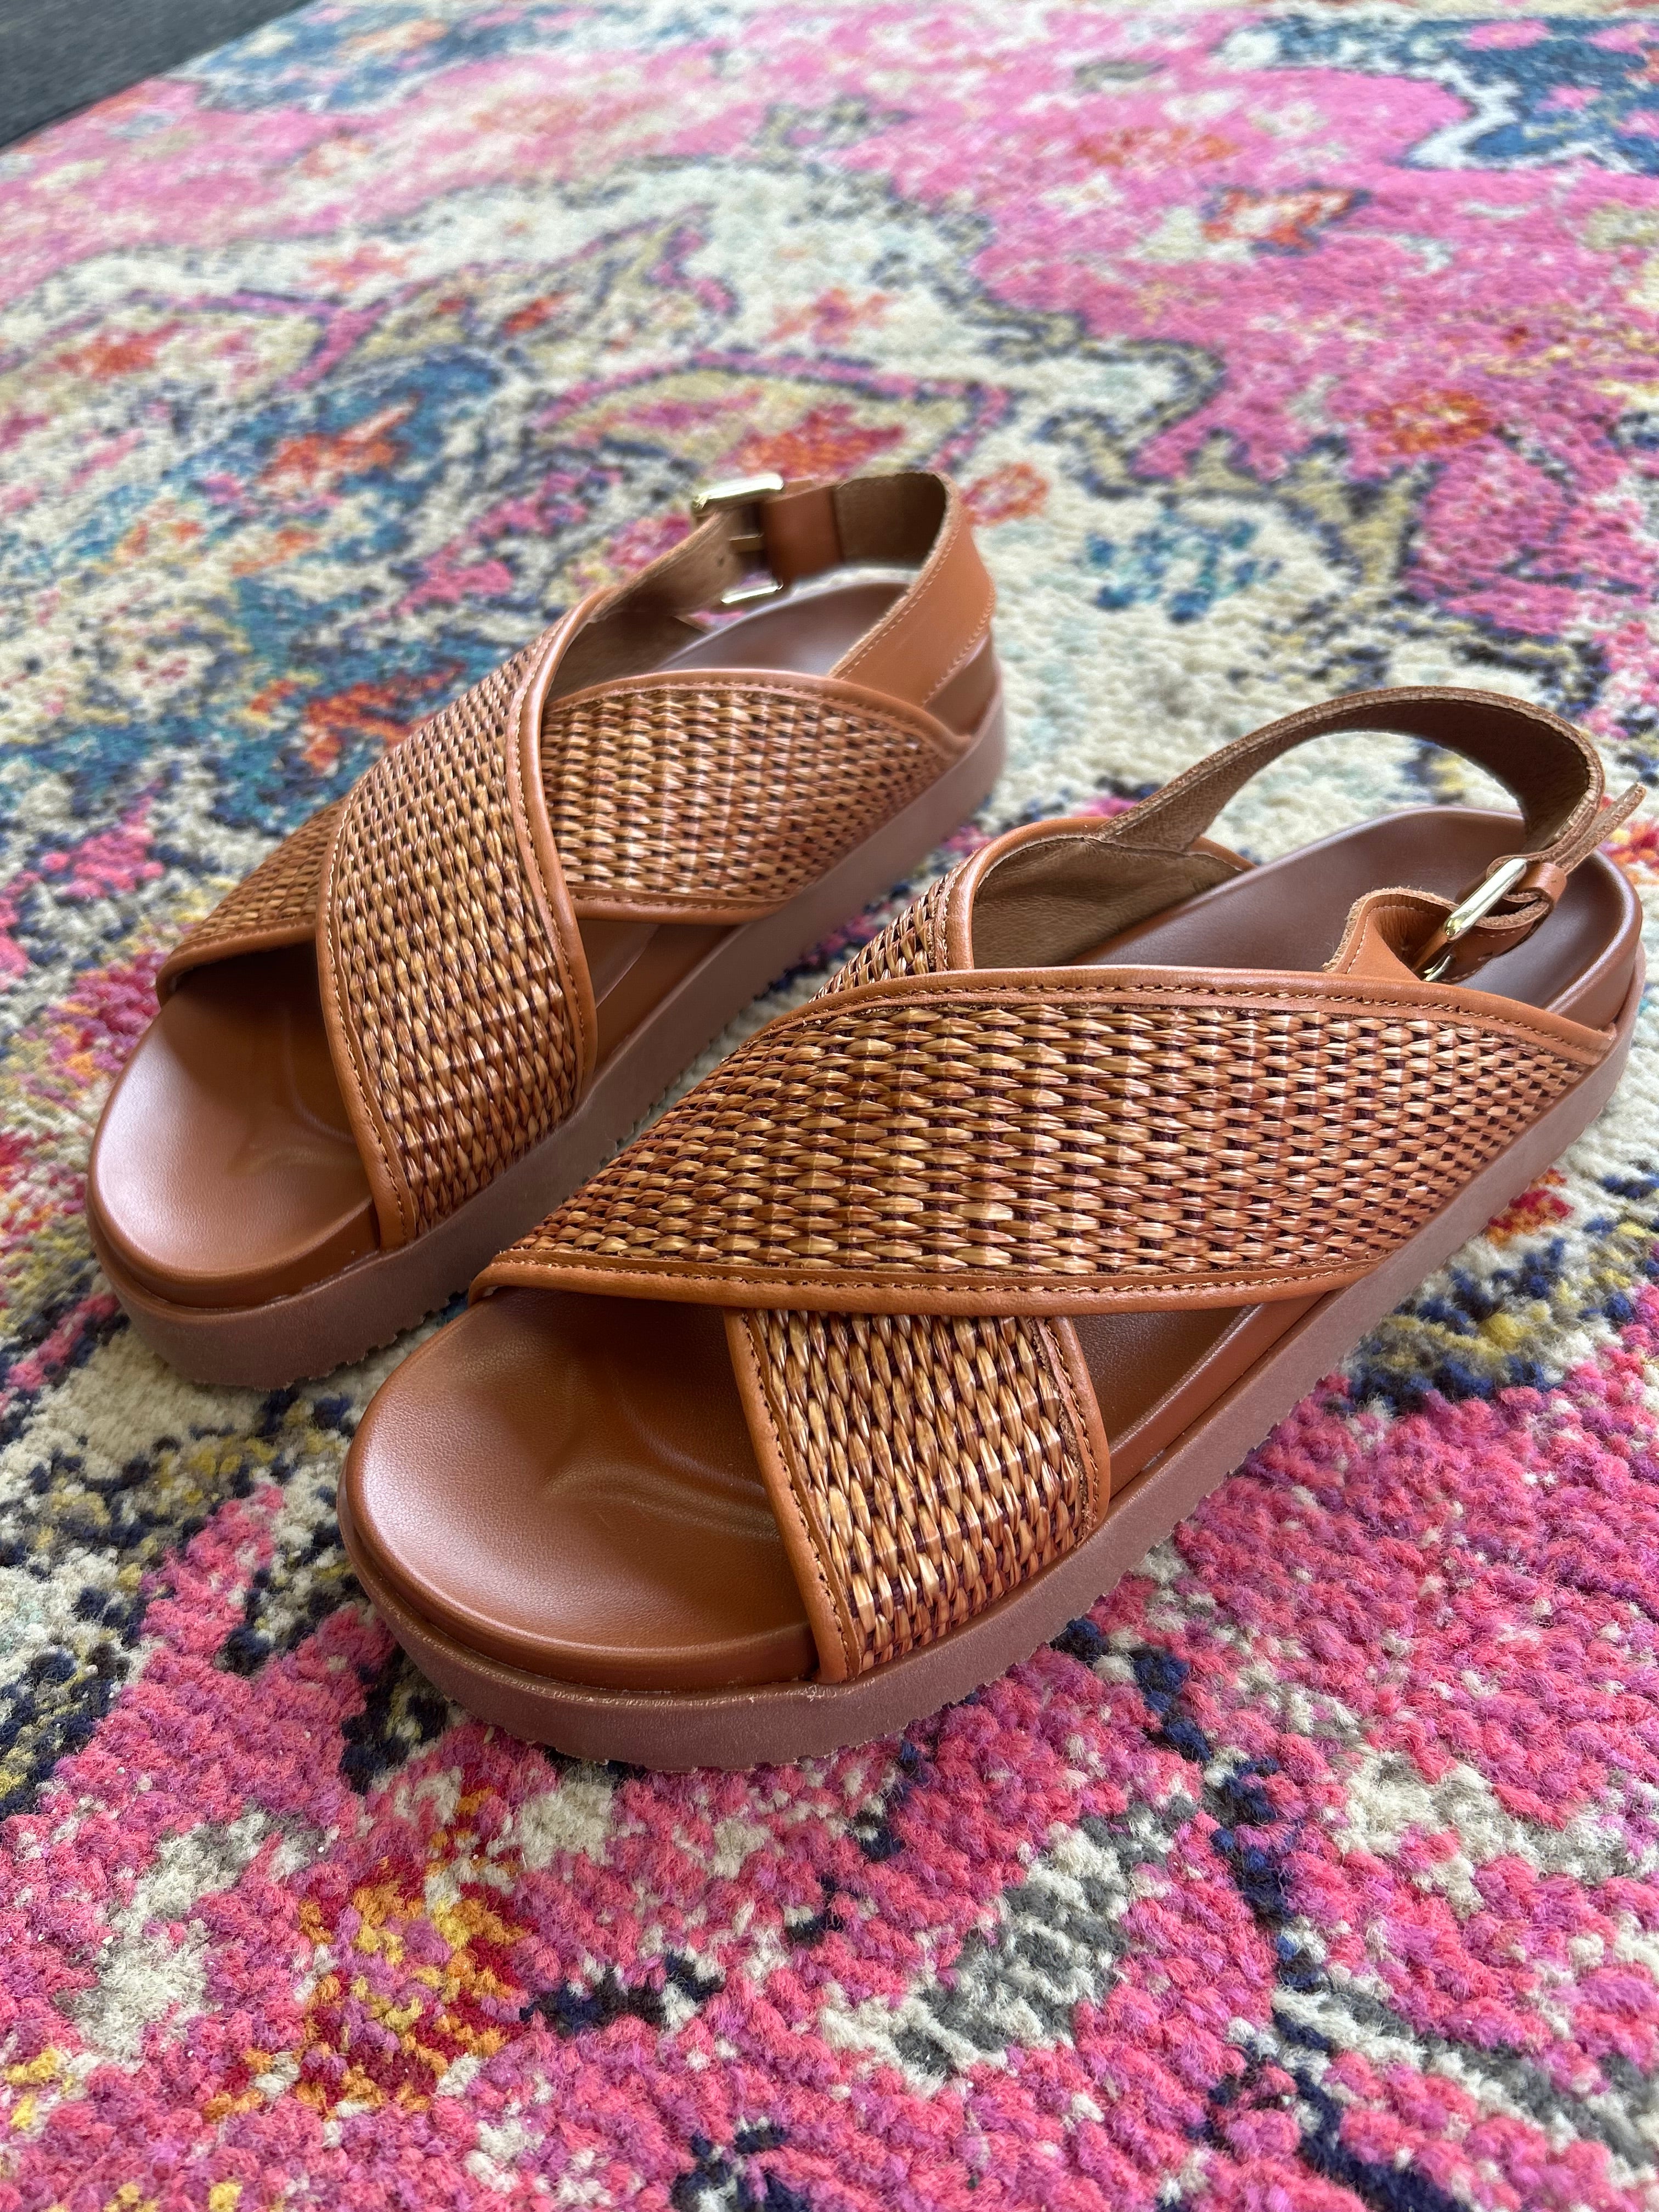 SISTER X SOEUR Amari Sandals in Tan